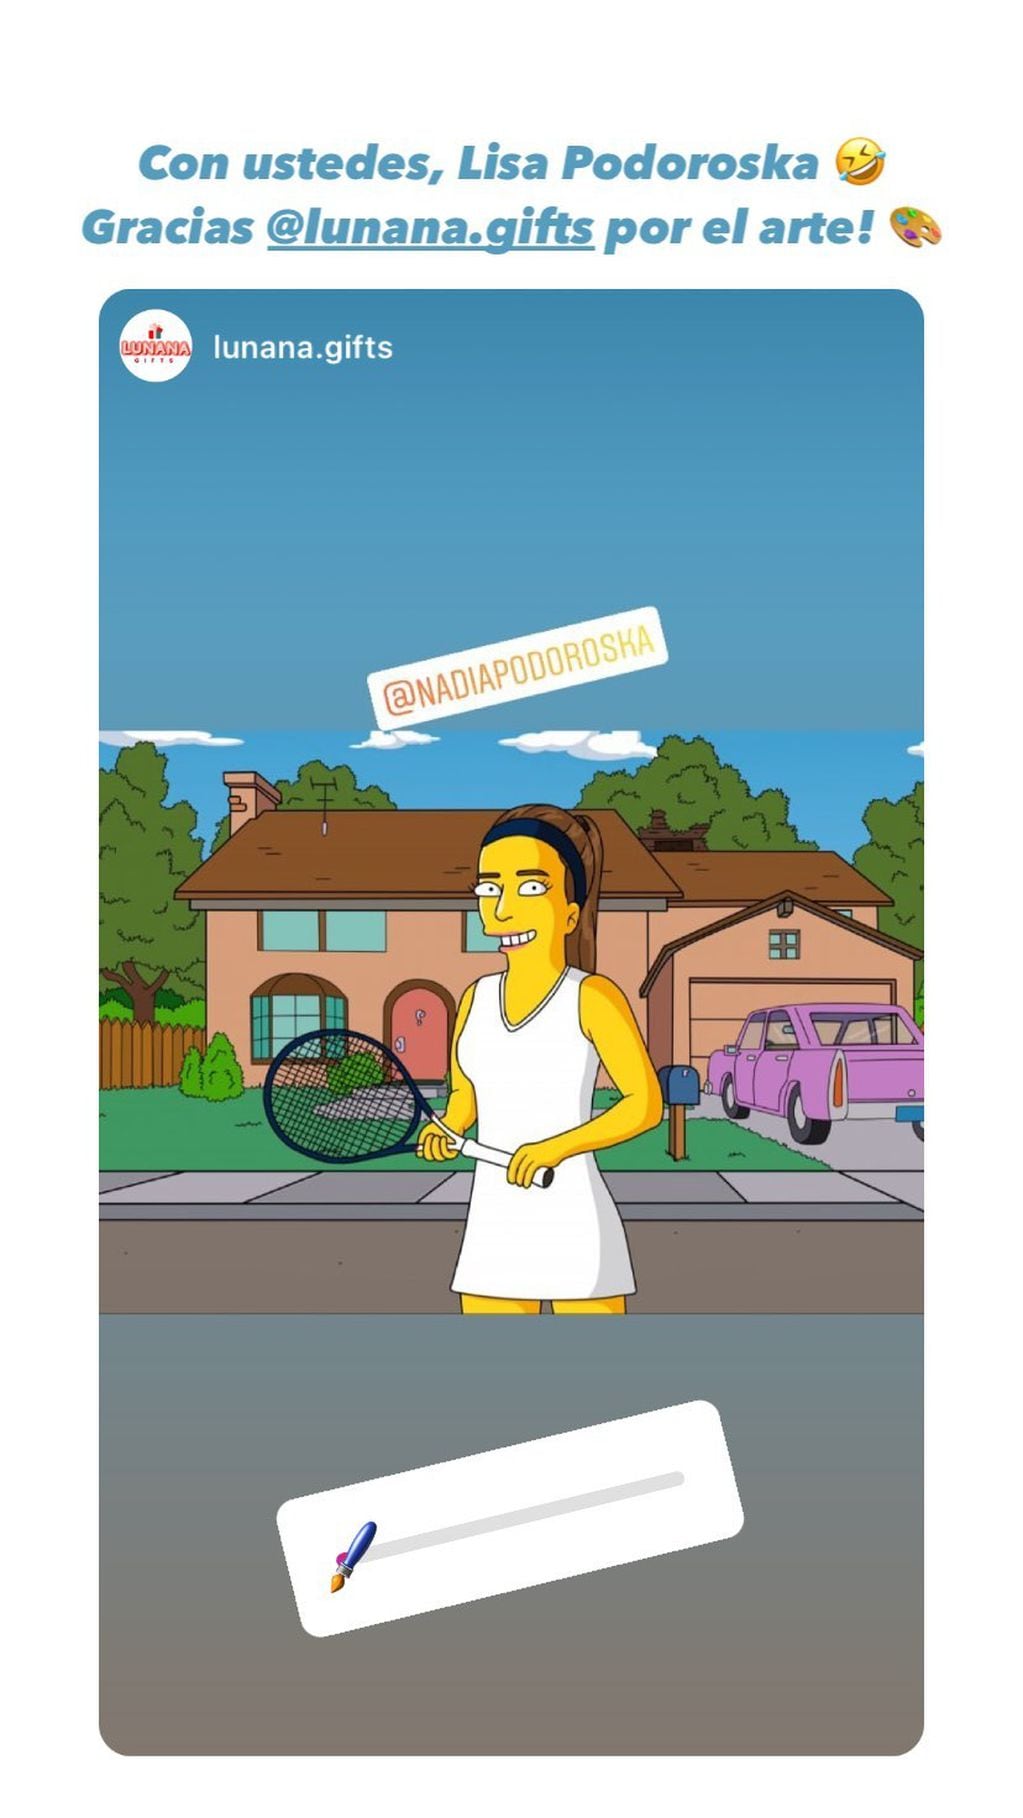 La tenista les pidió opinión a sus seguidores luego de ver el dibujo como si estuviera en Springfield.